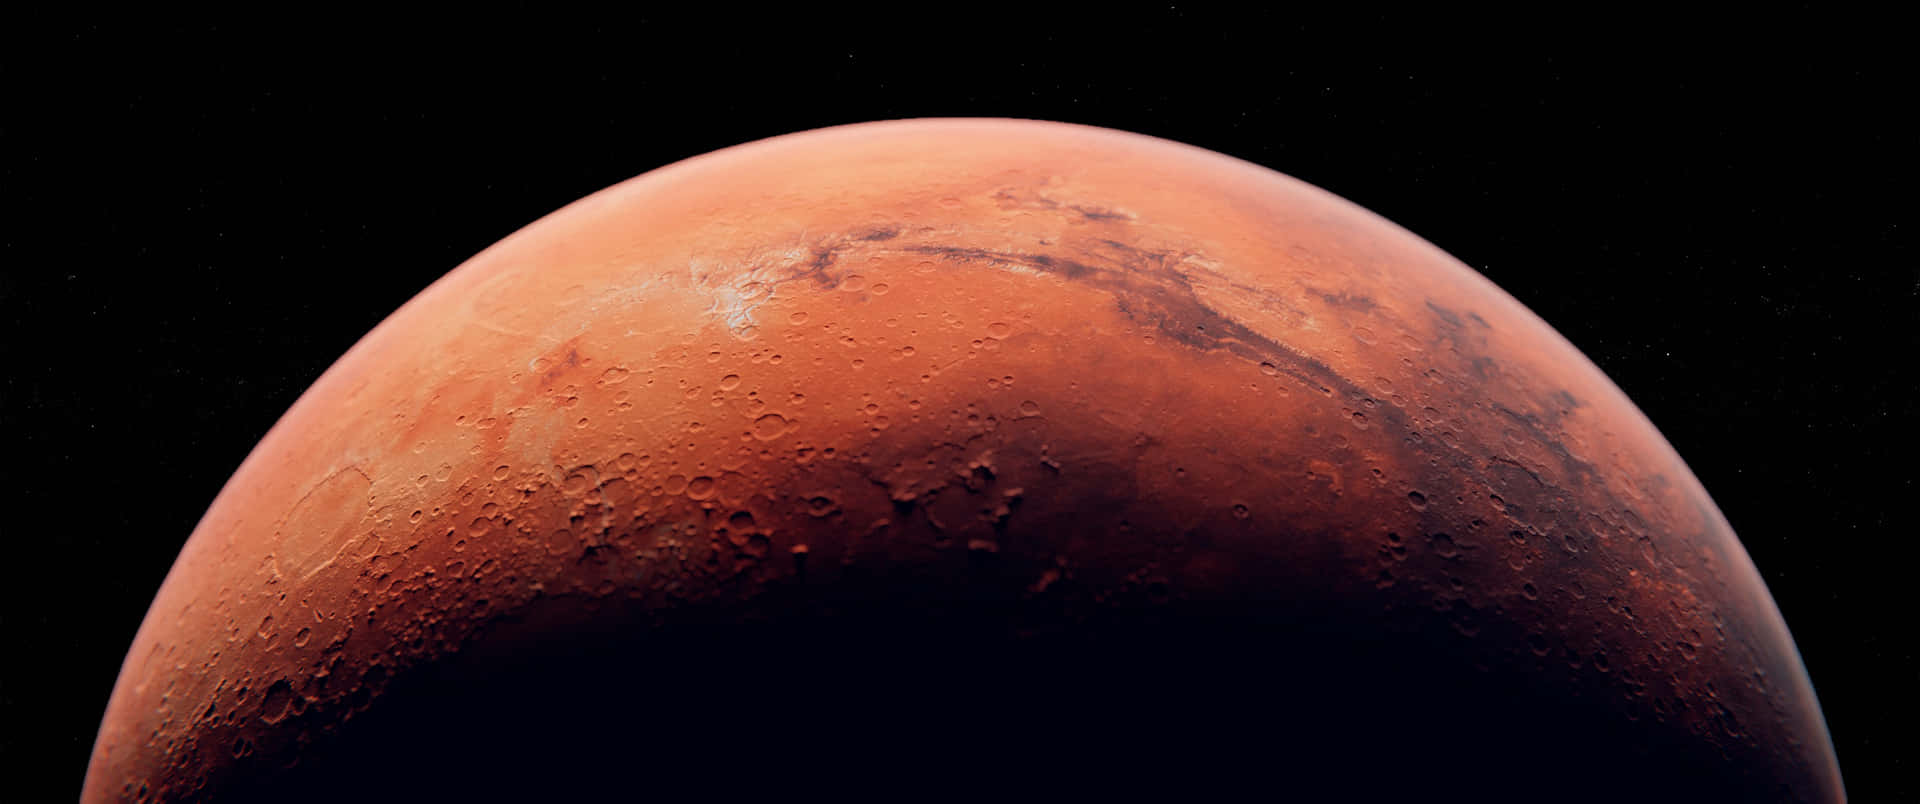 Realizaun Viaje Al Espacio Exterior Y Explora El Misterioso Planeta Marte.